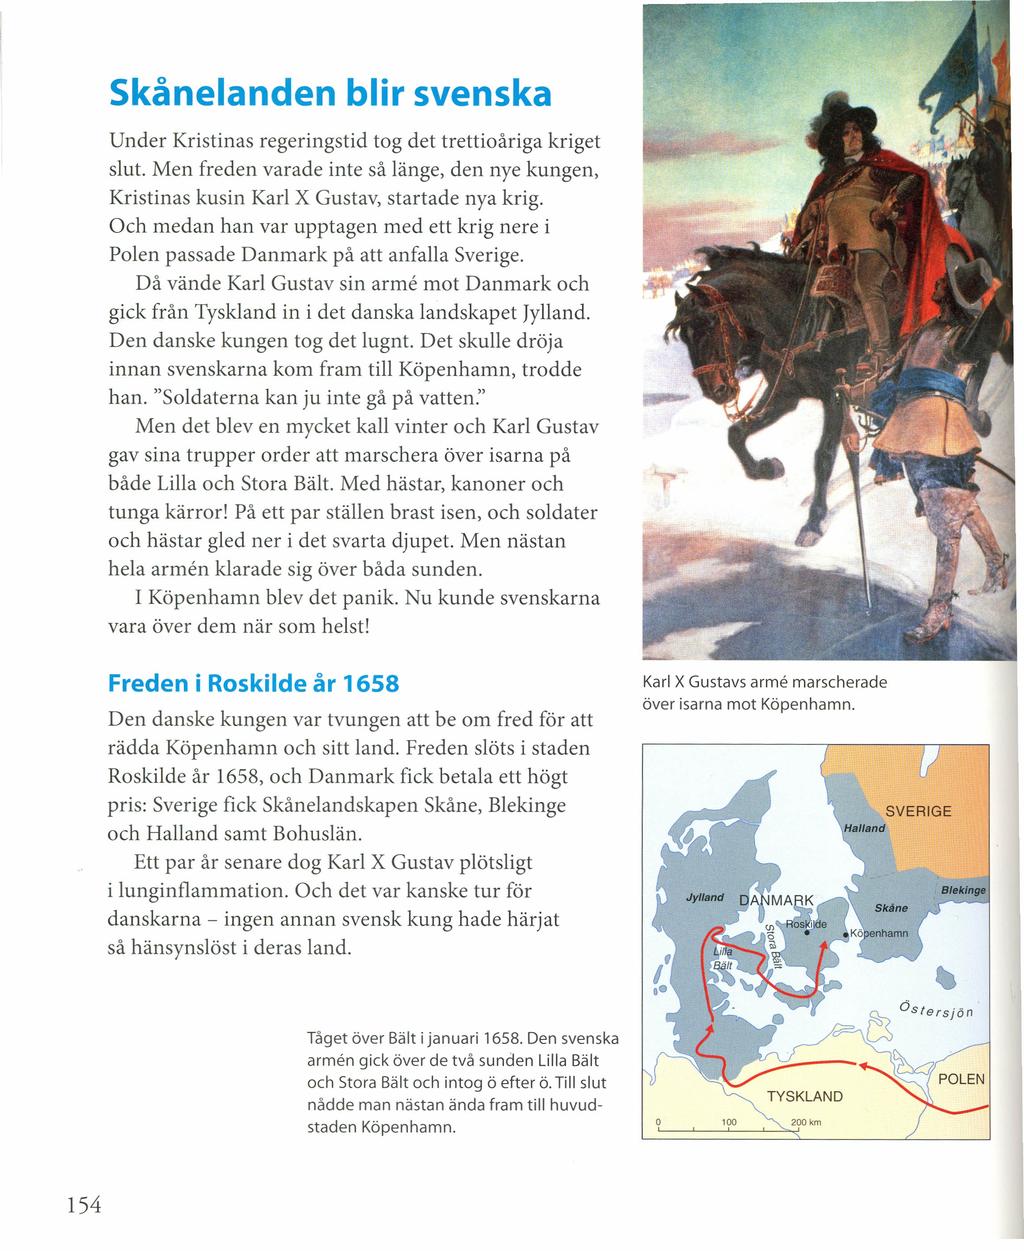 Skåneianden blir svenska Under Kristinas regeringstid tog det trettioåriga kriget slut. Men freden varade inte så länge, den nye kungen, Kristinas kusin Karl X Gustav, startade nya krig.